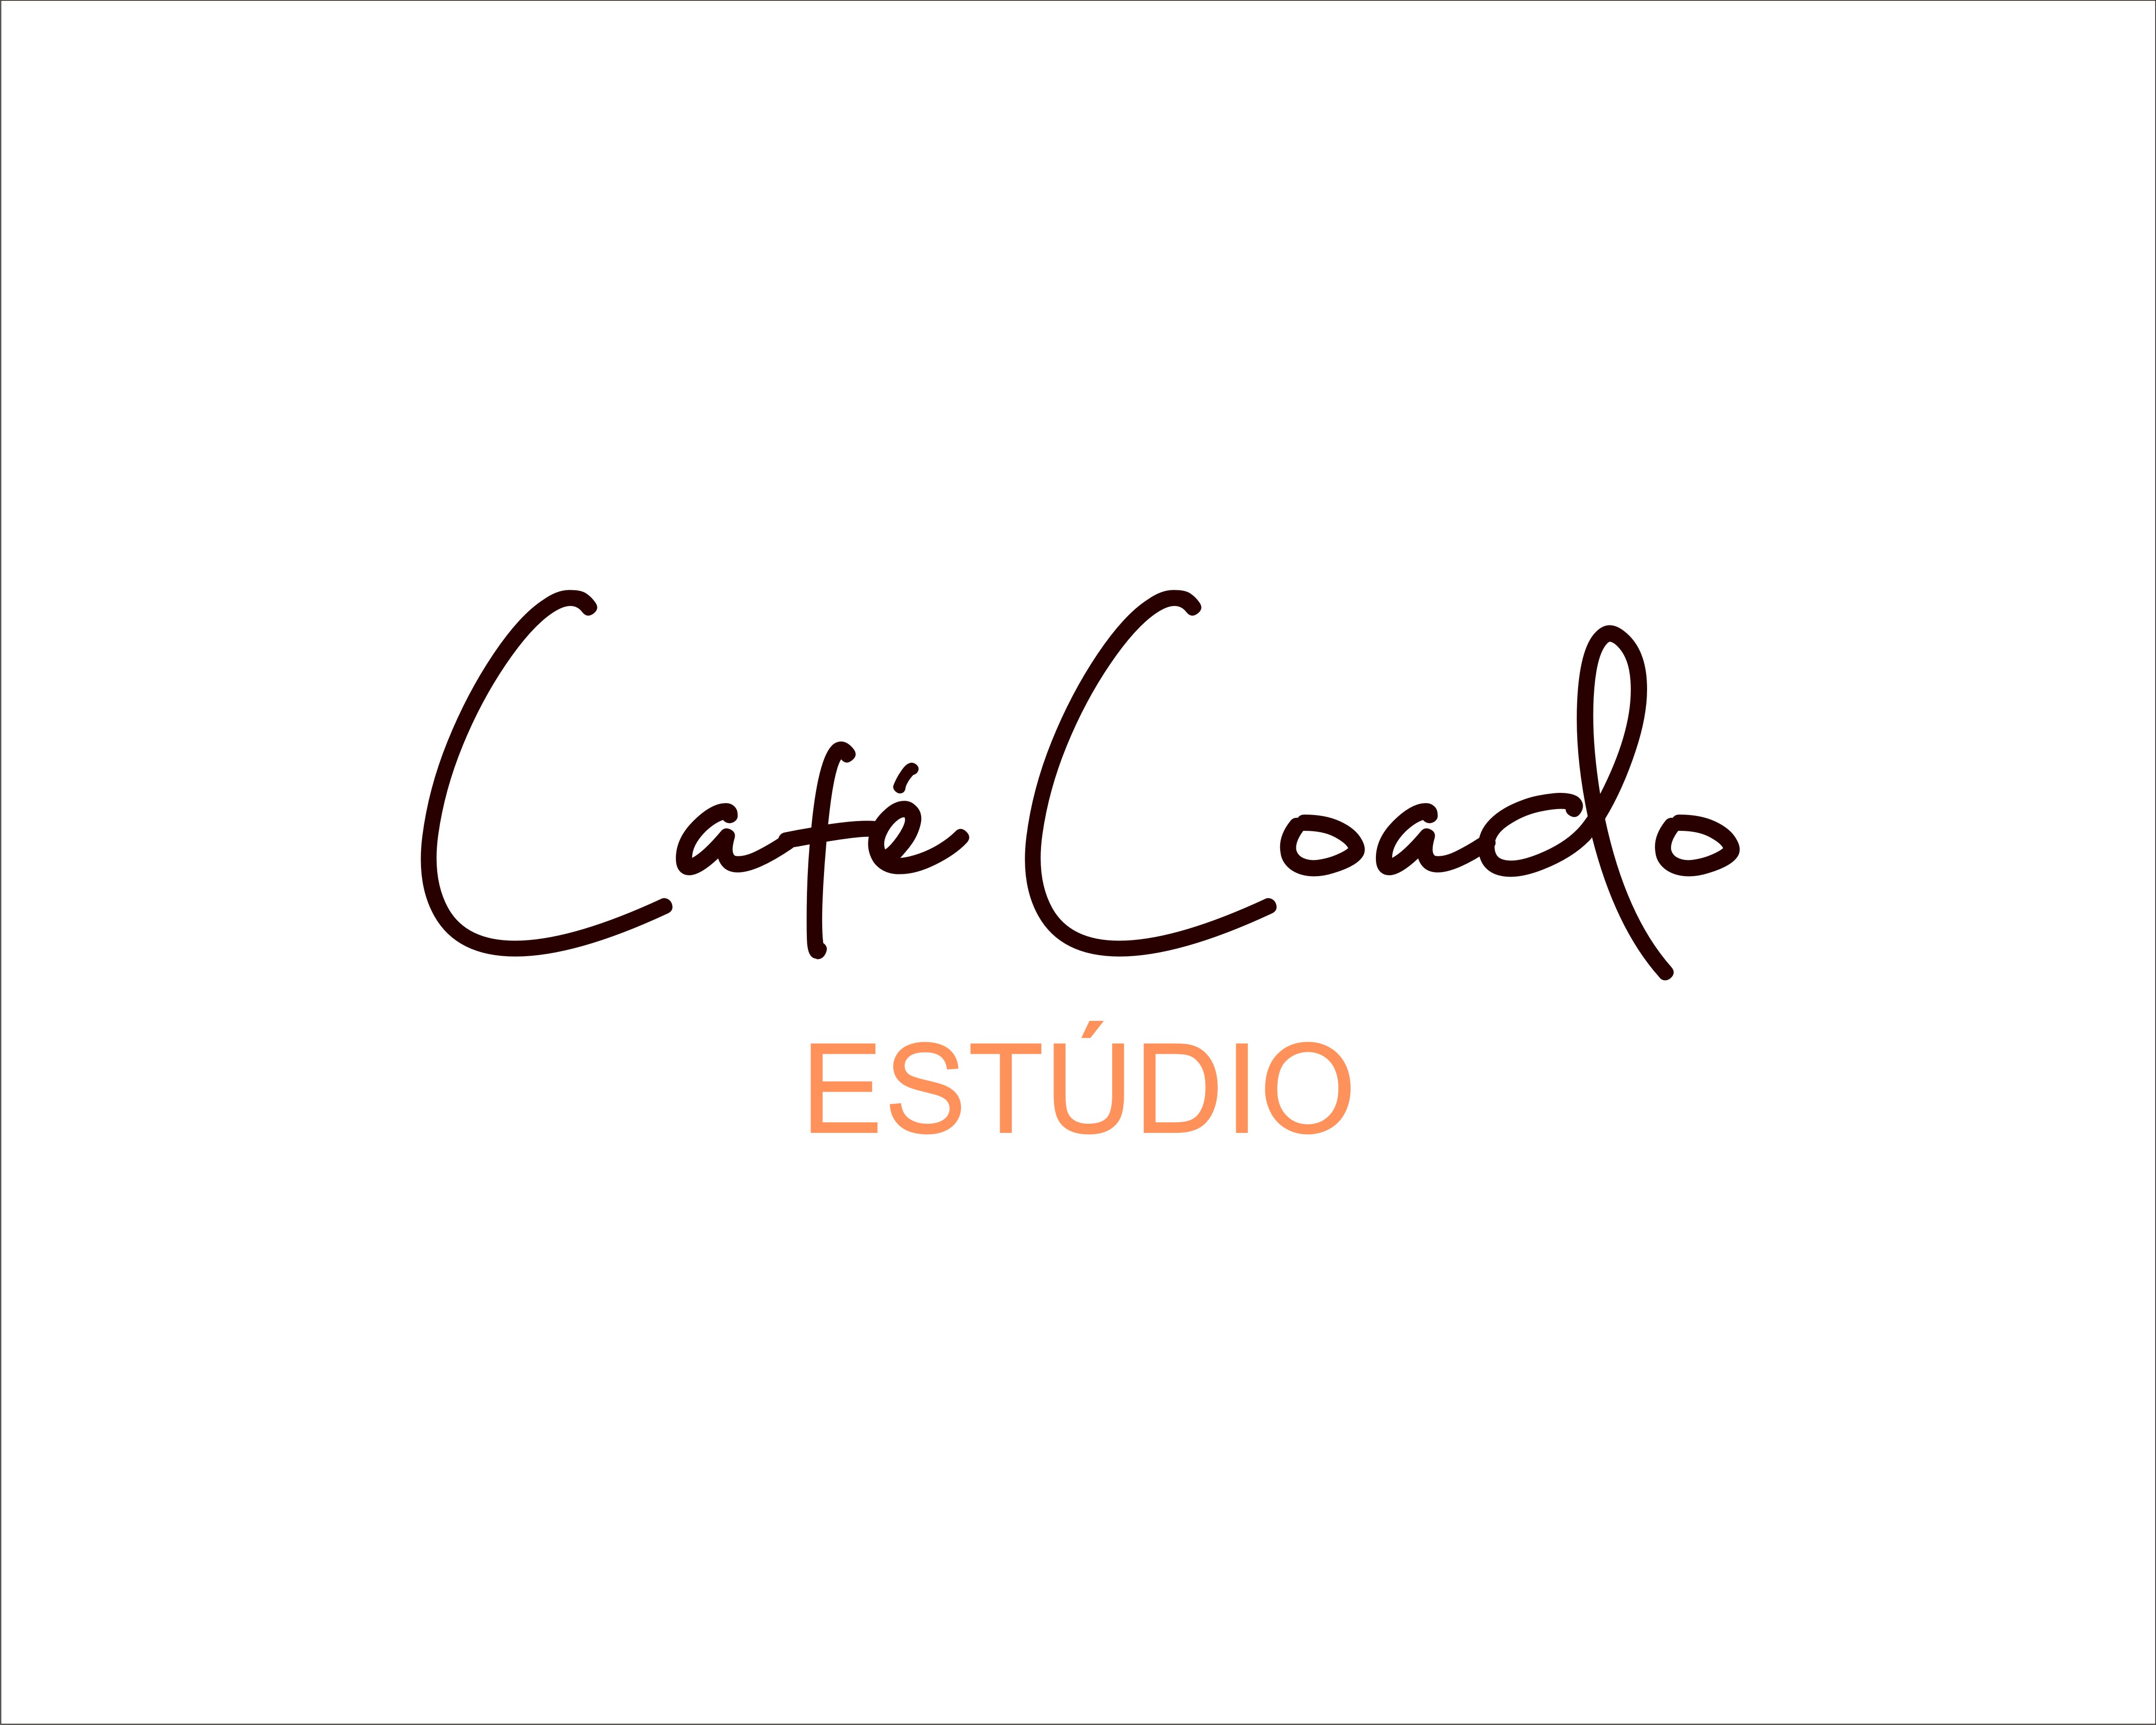 Logo Design entry 1943410 submitted by Logo Allergic to the Logo Design for Estúdio Café Coado run by Camila